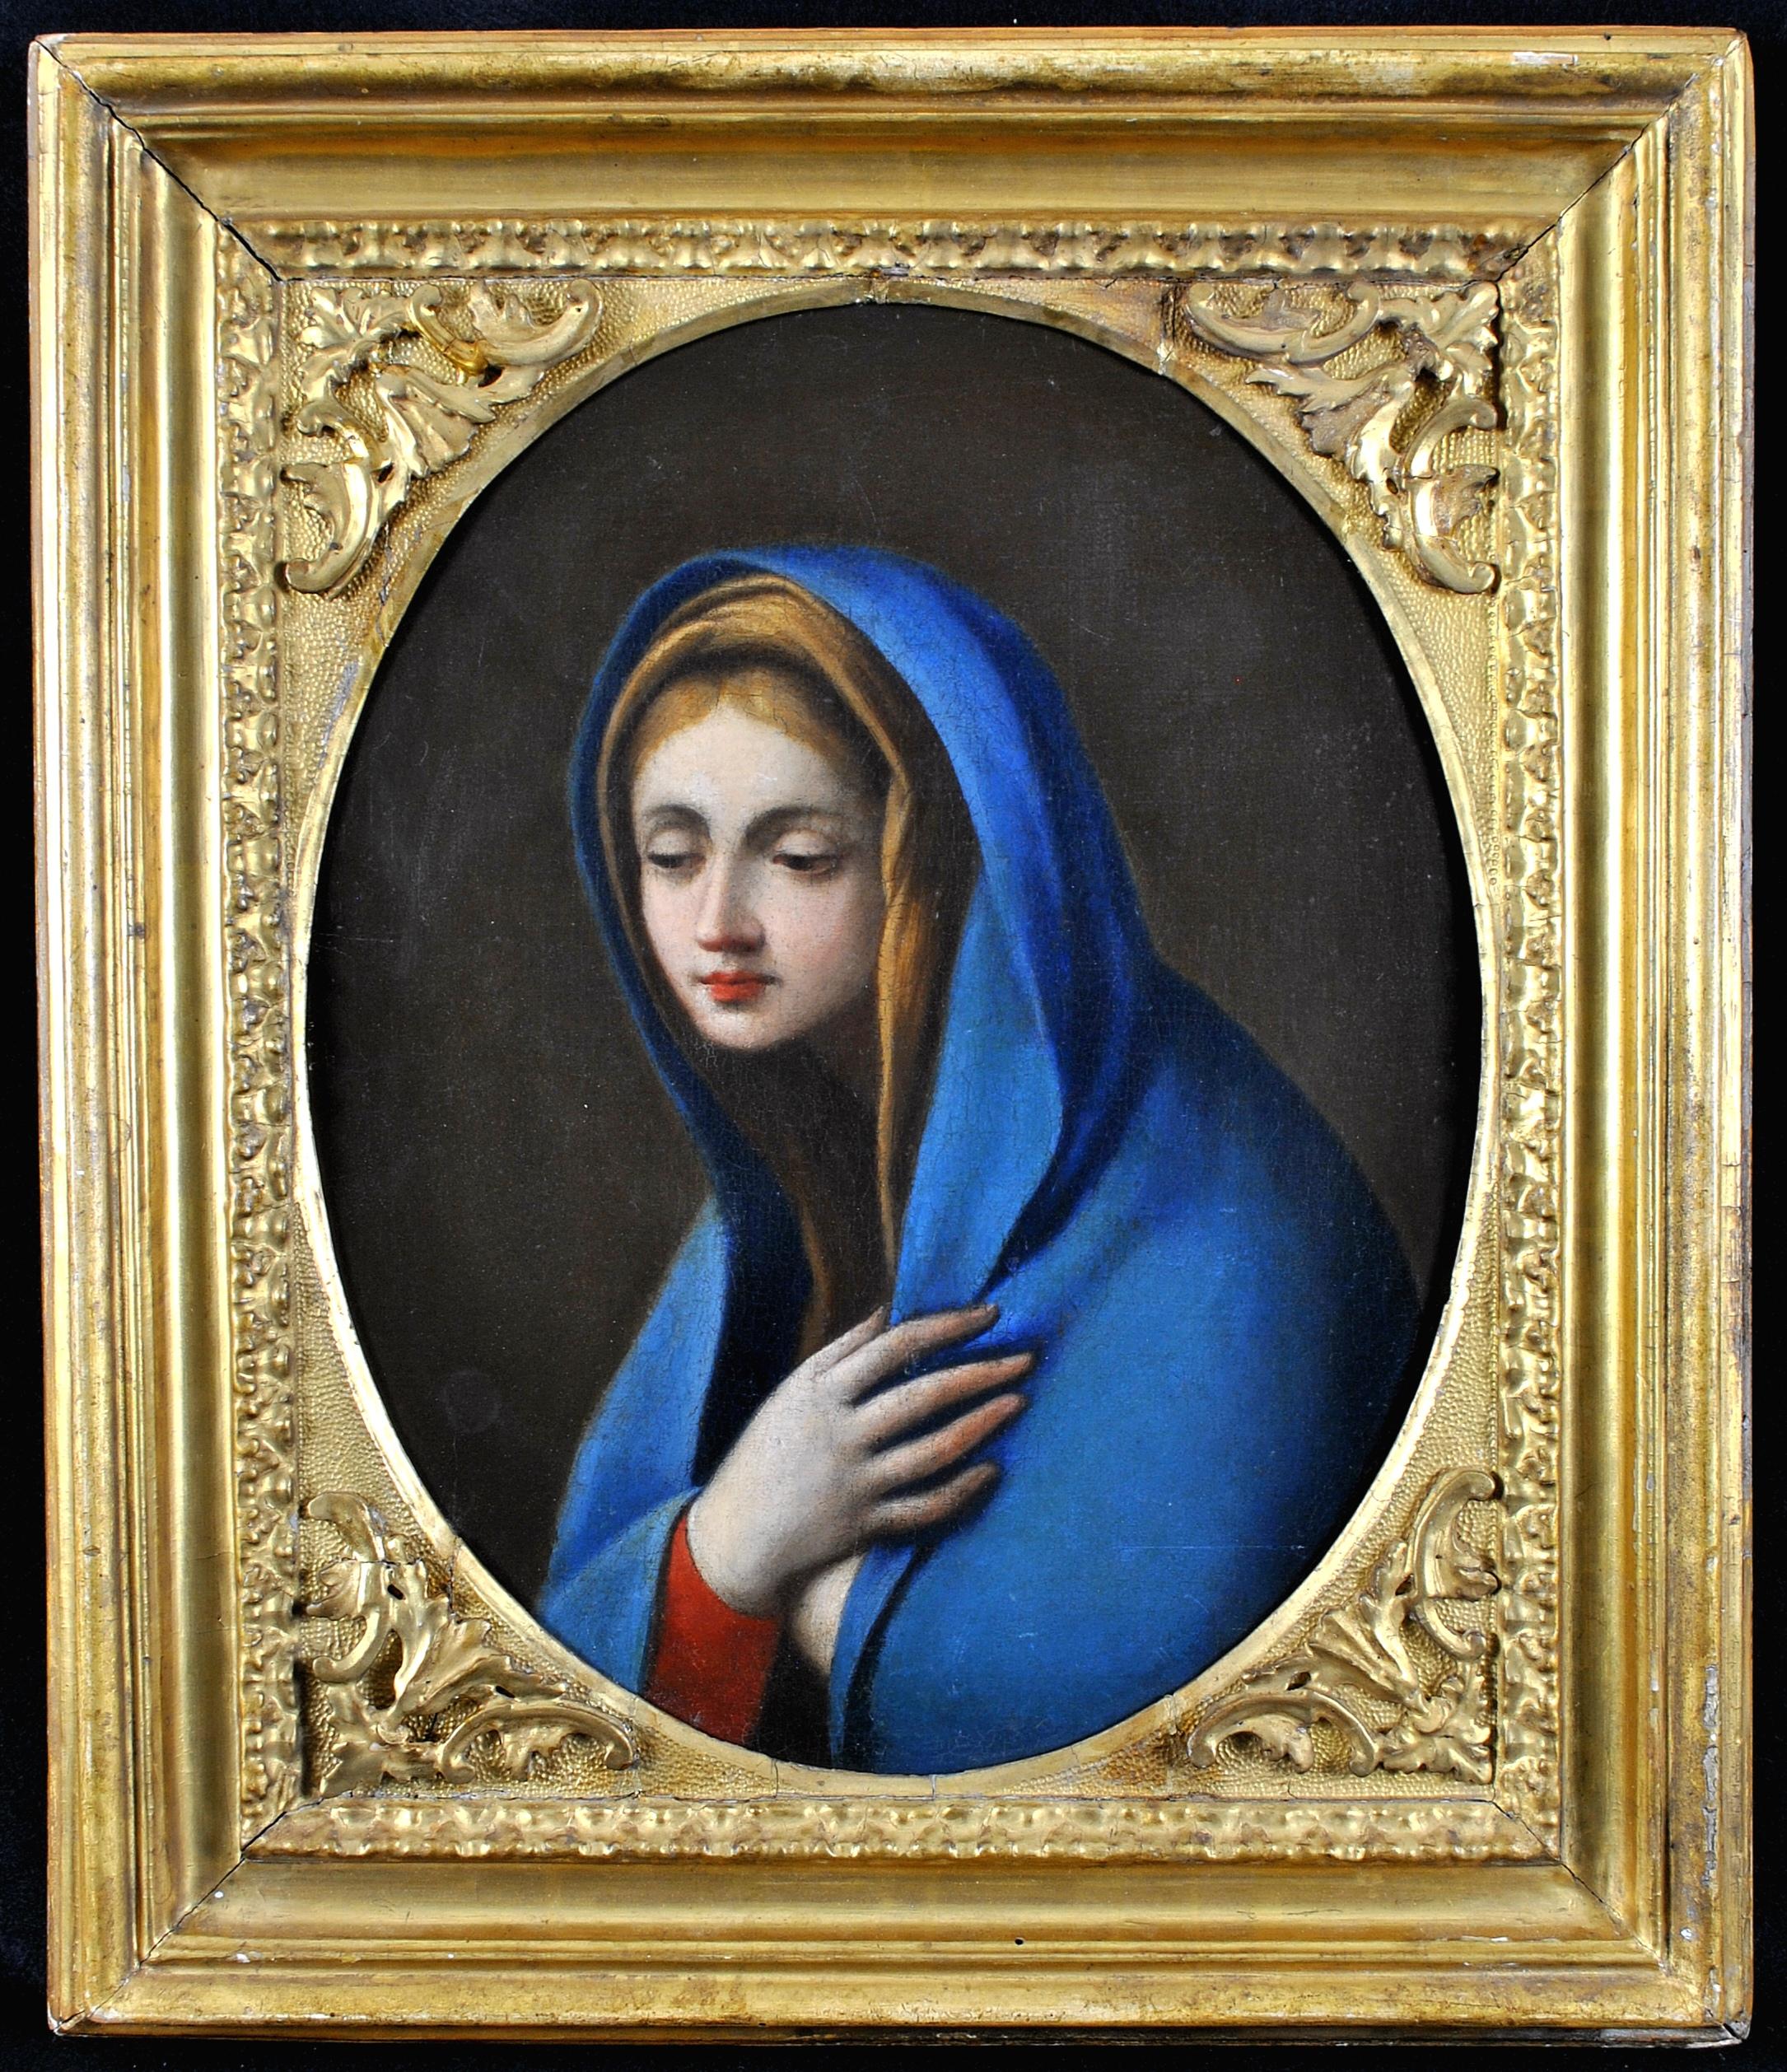 The Virgin in Adoration - Peinture à l'huile religieuse italienne du 17e siècle, vieux maître